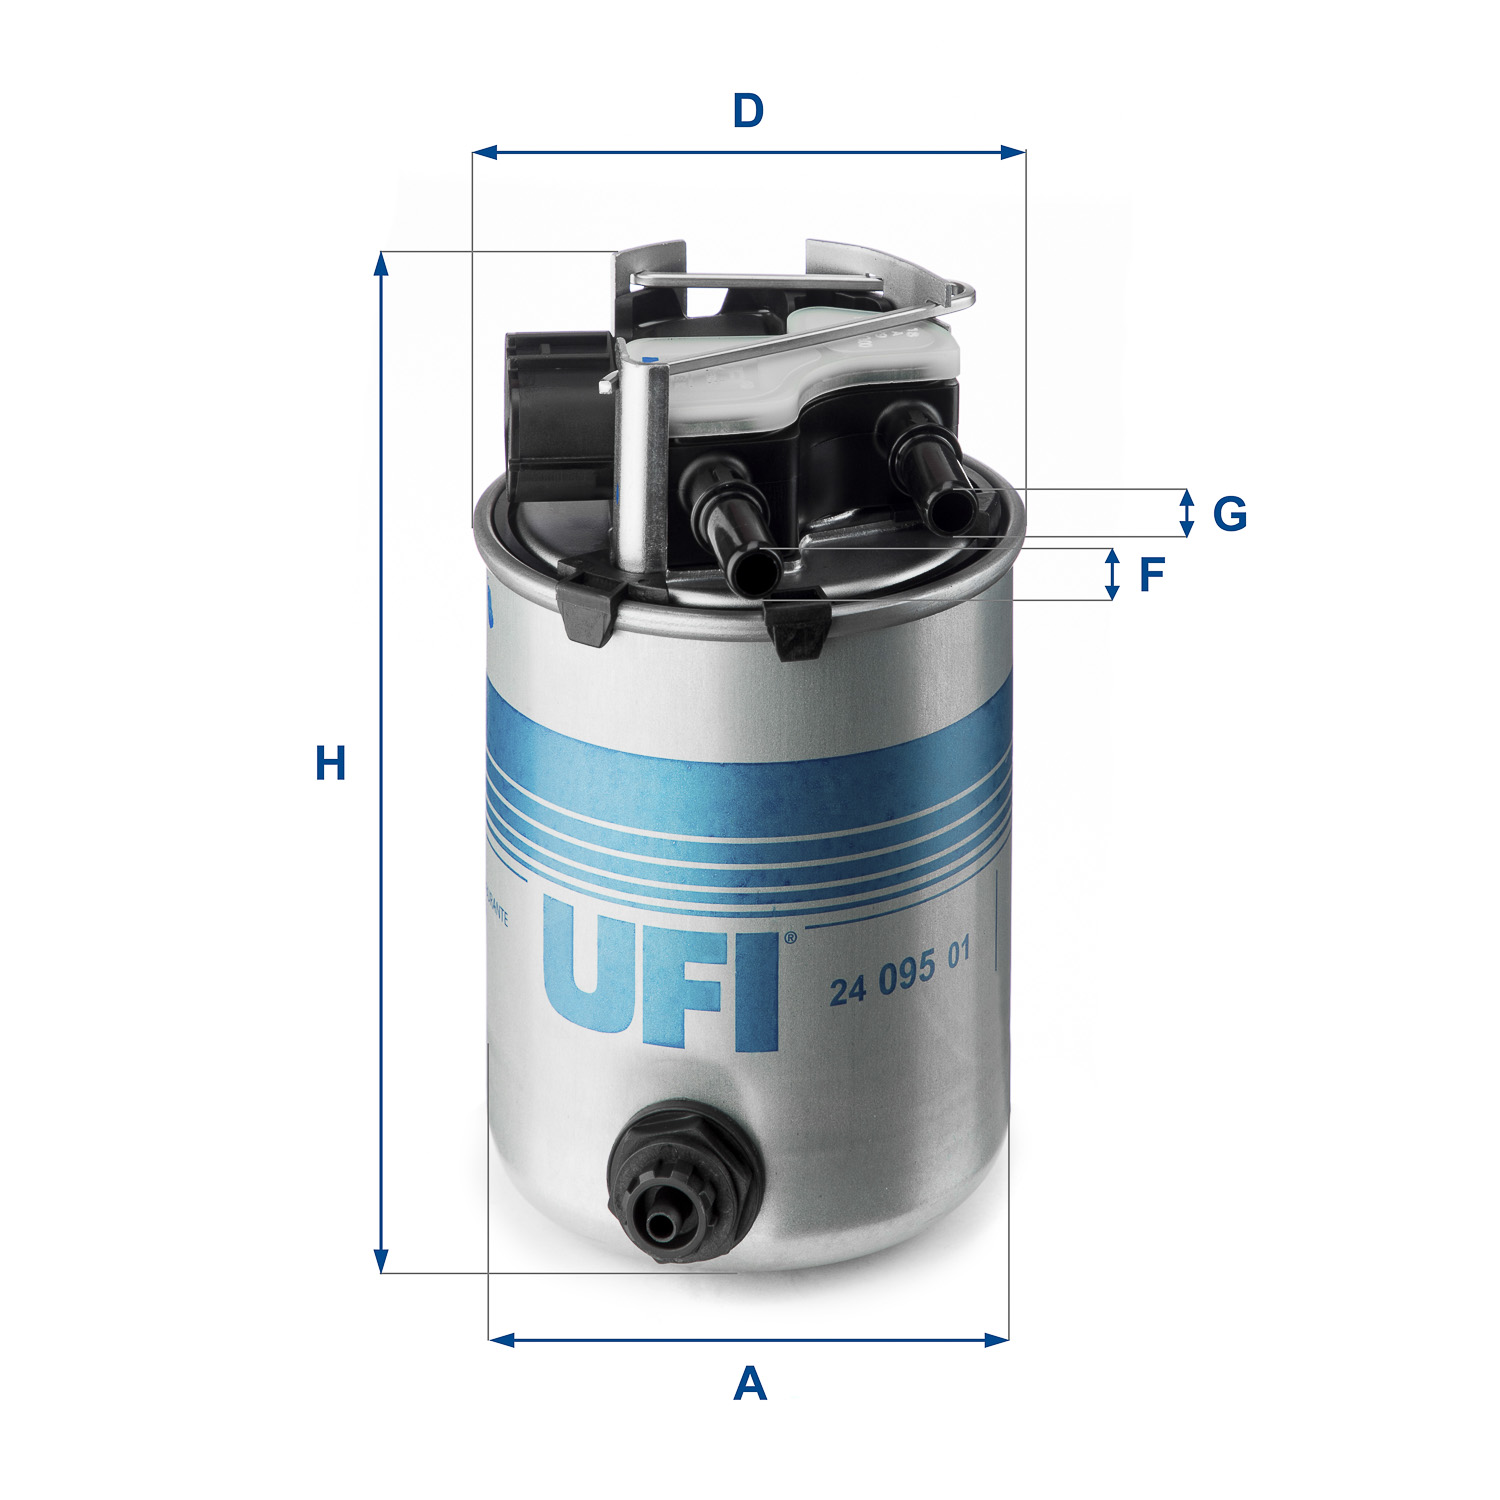 UFI  yakit filtresi renault kadjar 15 dci16 dci 2015 oem montaj urun 2409501 4